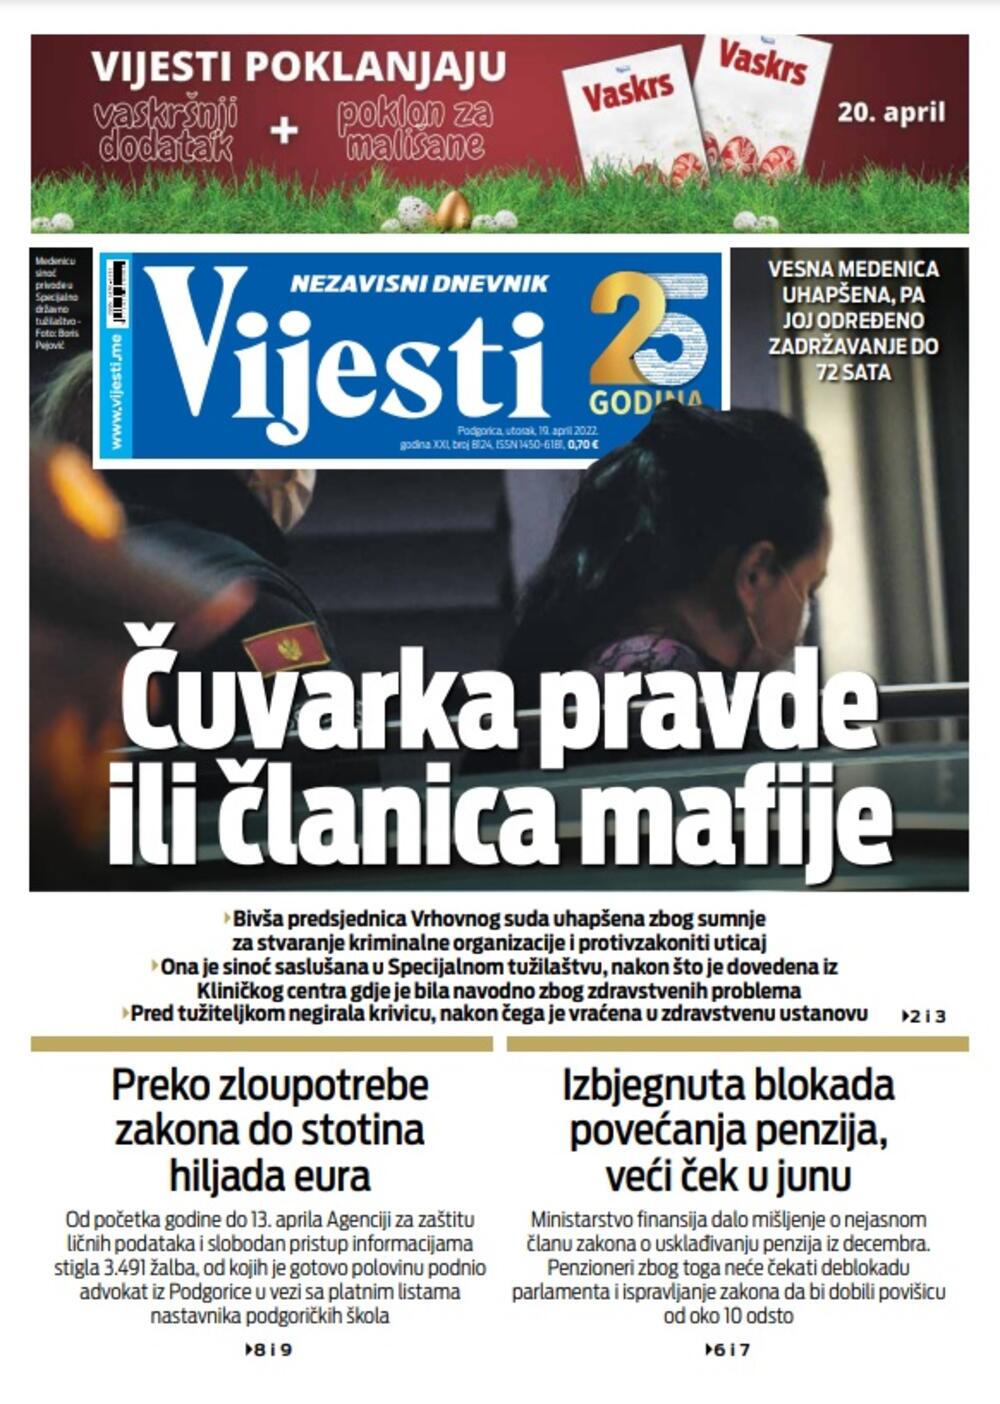 Naslovna strana "Vijesti" za 19. april, Foto: Vijesti